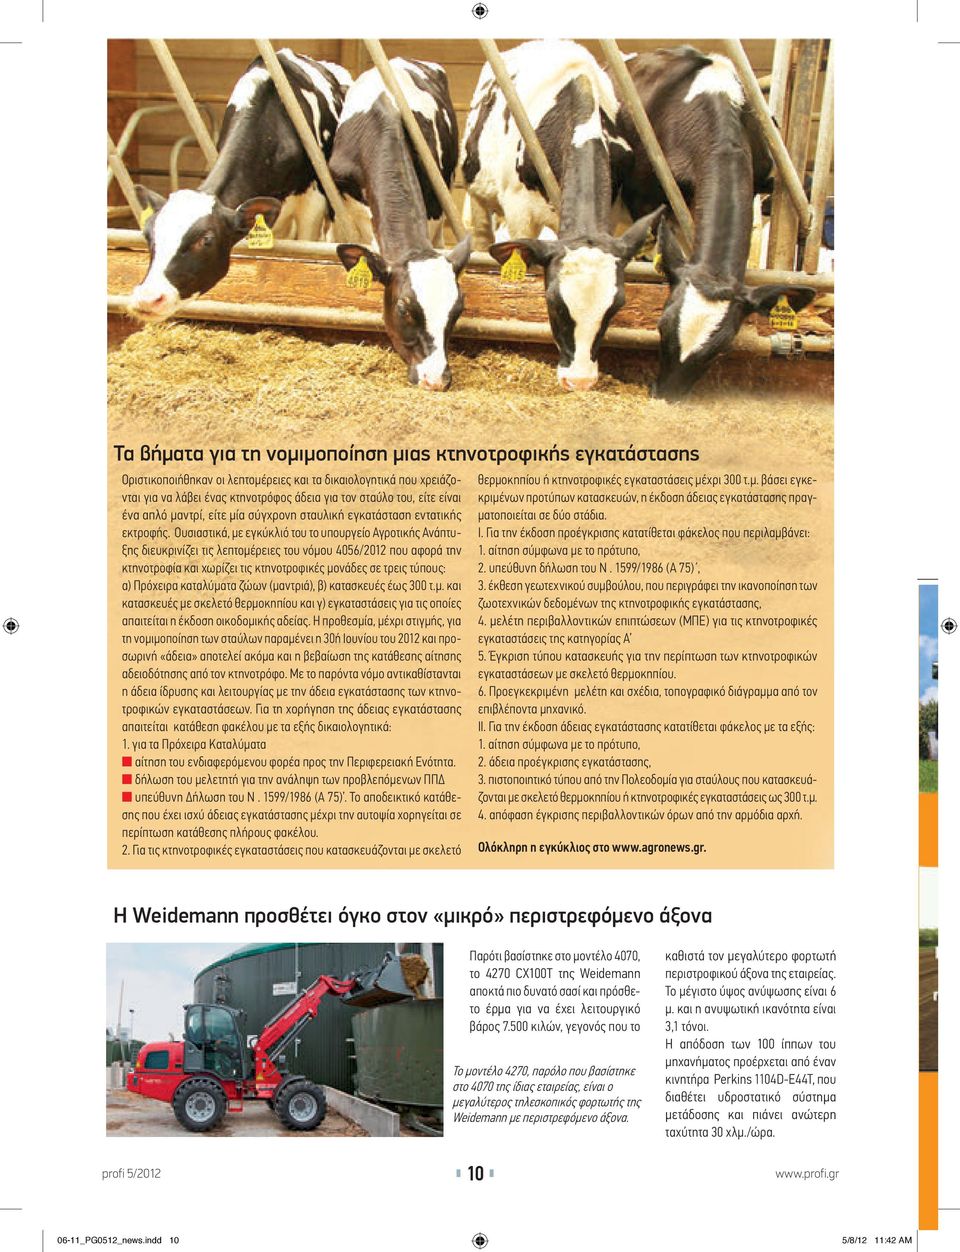 Ουσιαστικά, με εγκύκλιό του το υπουργείο Αγροτικής Ανάπτυξης διευκρινίζει τις λεπτομέρειες του νόμου 4056/2012 που αφορά την κτηνοτροφία και χωρίζει τις κτηνοτροφικές μονάδες σε τρεις τύπους: α)